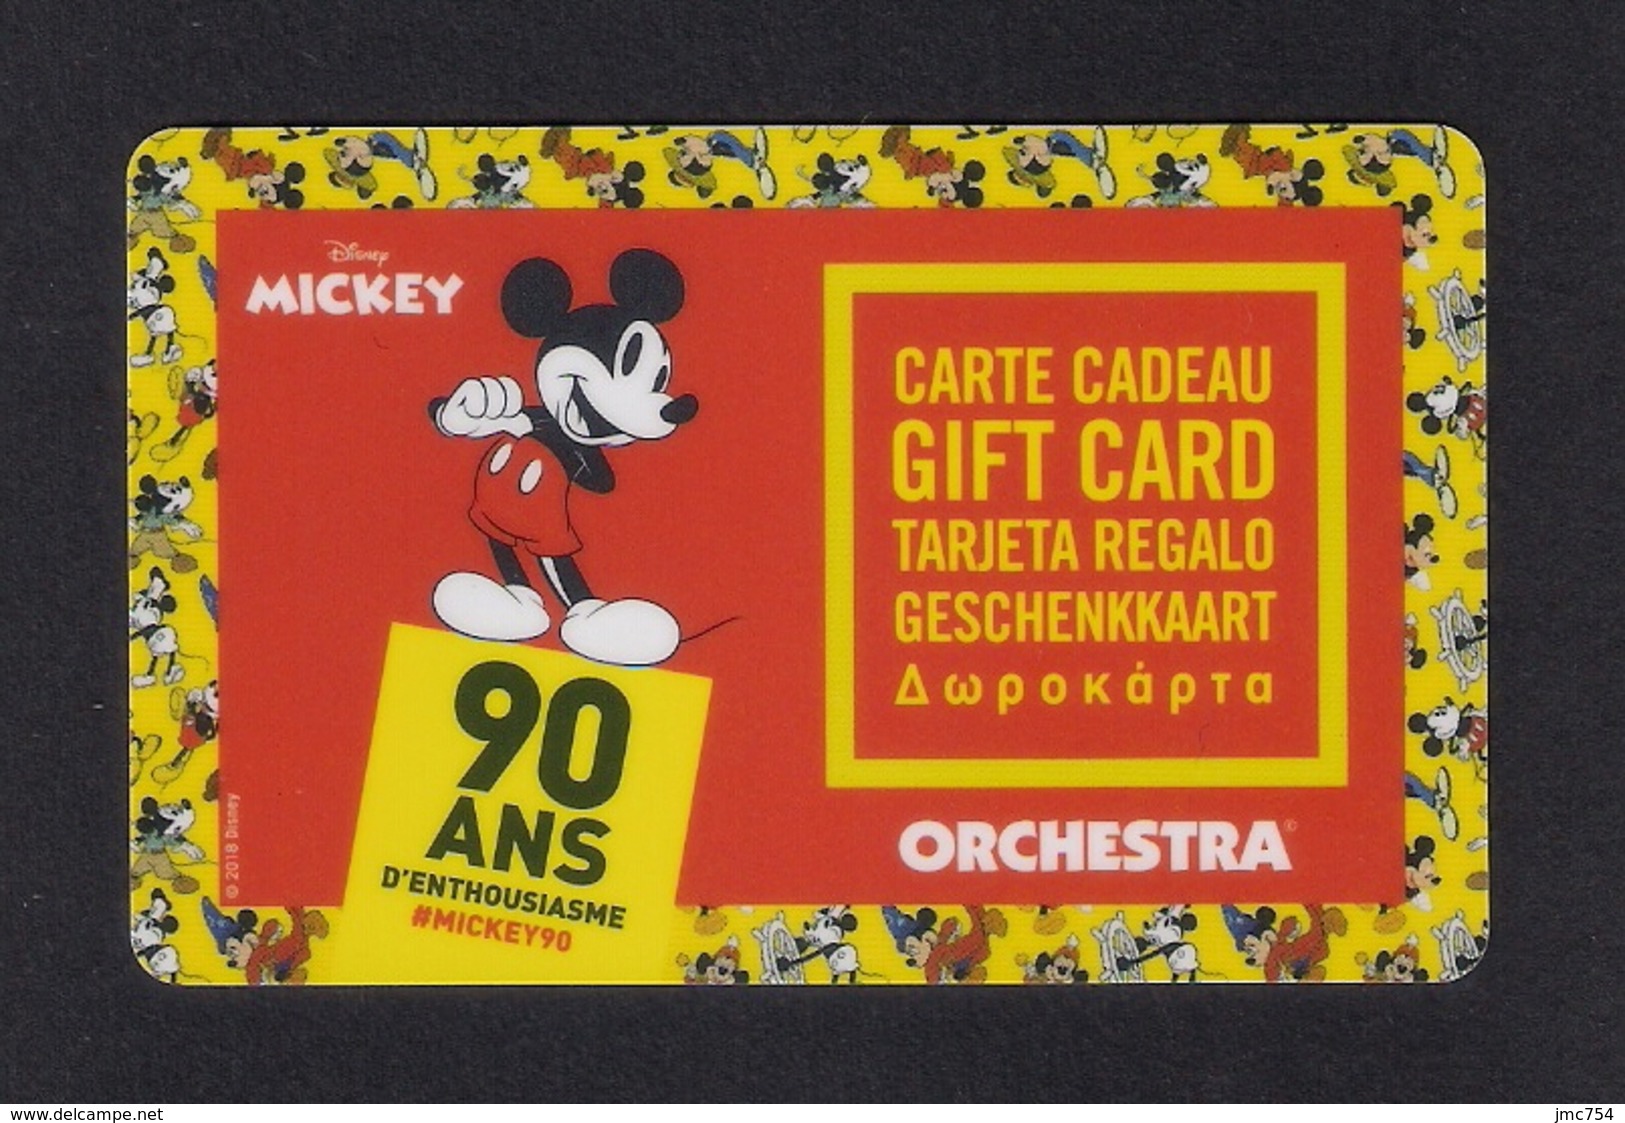 Carte Cadeau  ORCHESTRA.   MICKEY  Disney.   Gift Card.   Geschenkkaart.  Tarjeta Regalo. - Cartes Cadeaux